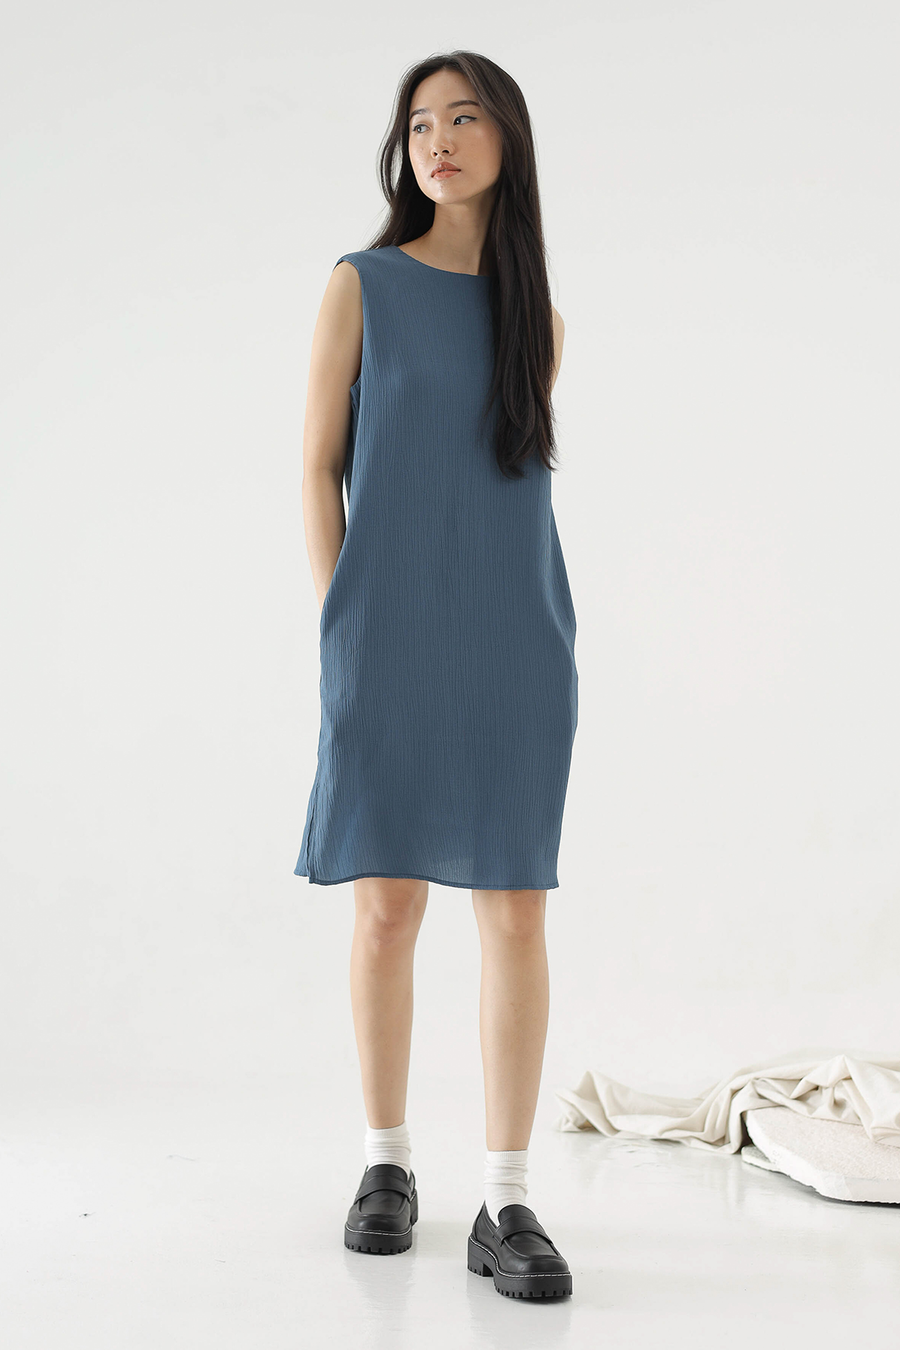 Azure Blue Call Dress